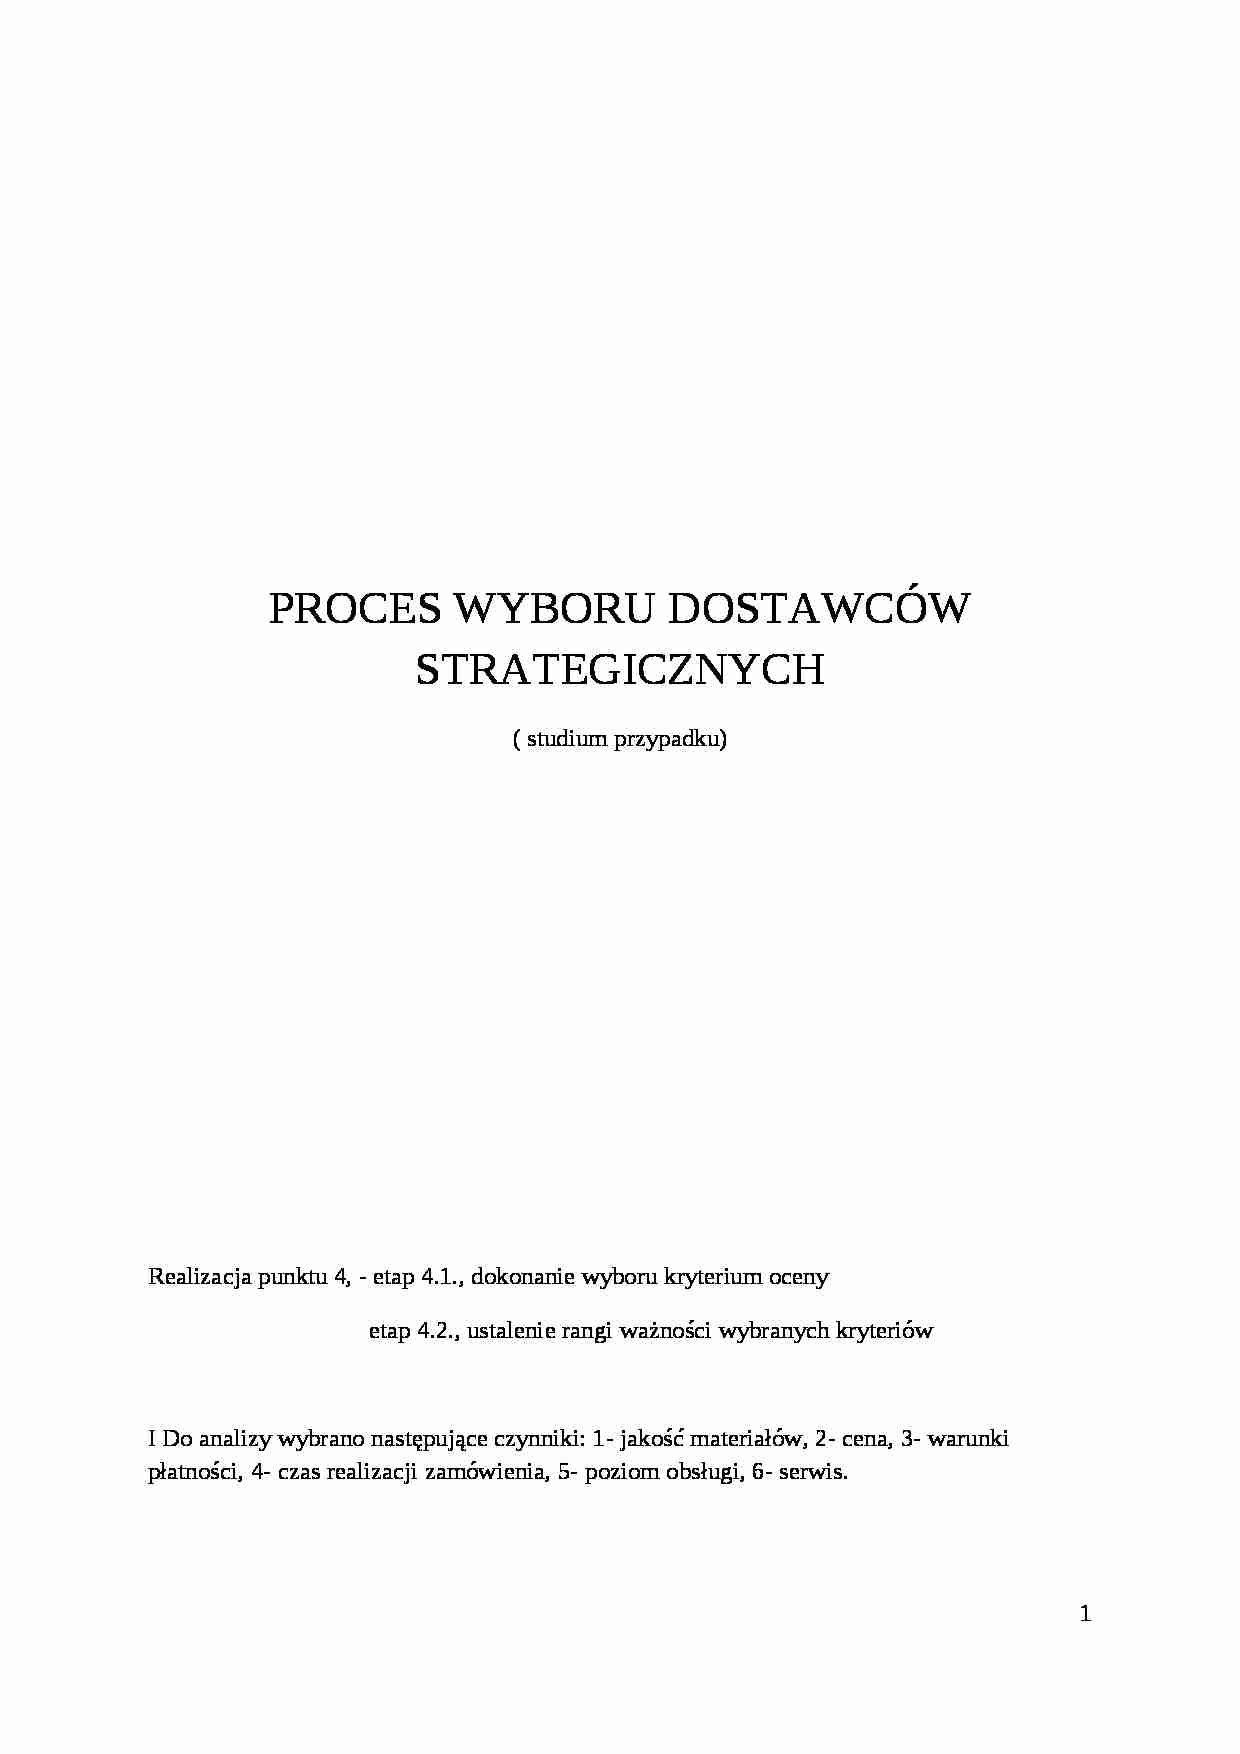 Proces wyboru dostawców strategicznych-projekt zaliczeniowy - strona 1